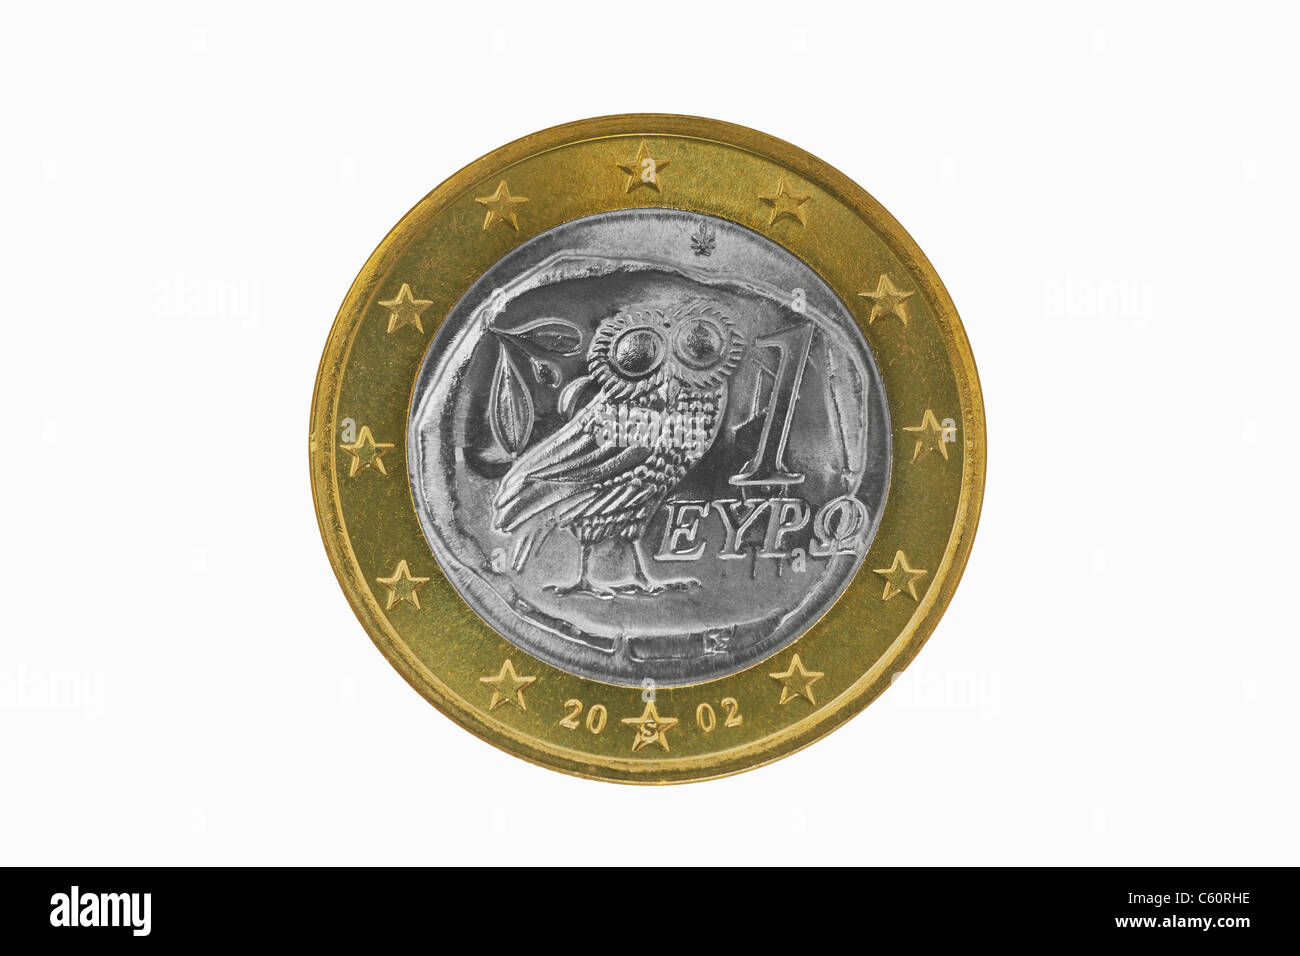 Detailansicht der Rückseite mit 1- Euro Münze aus Spanien | photo détail d'un verso d'une pièce de 1 euro de la Grèce Banque D'Images